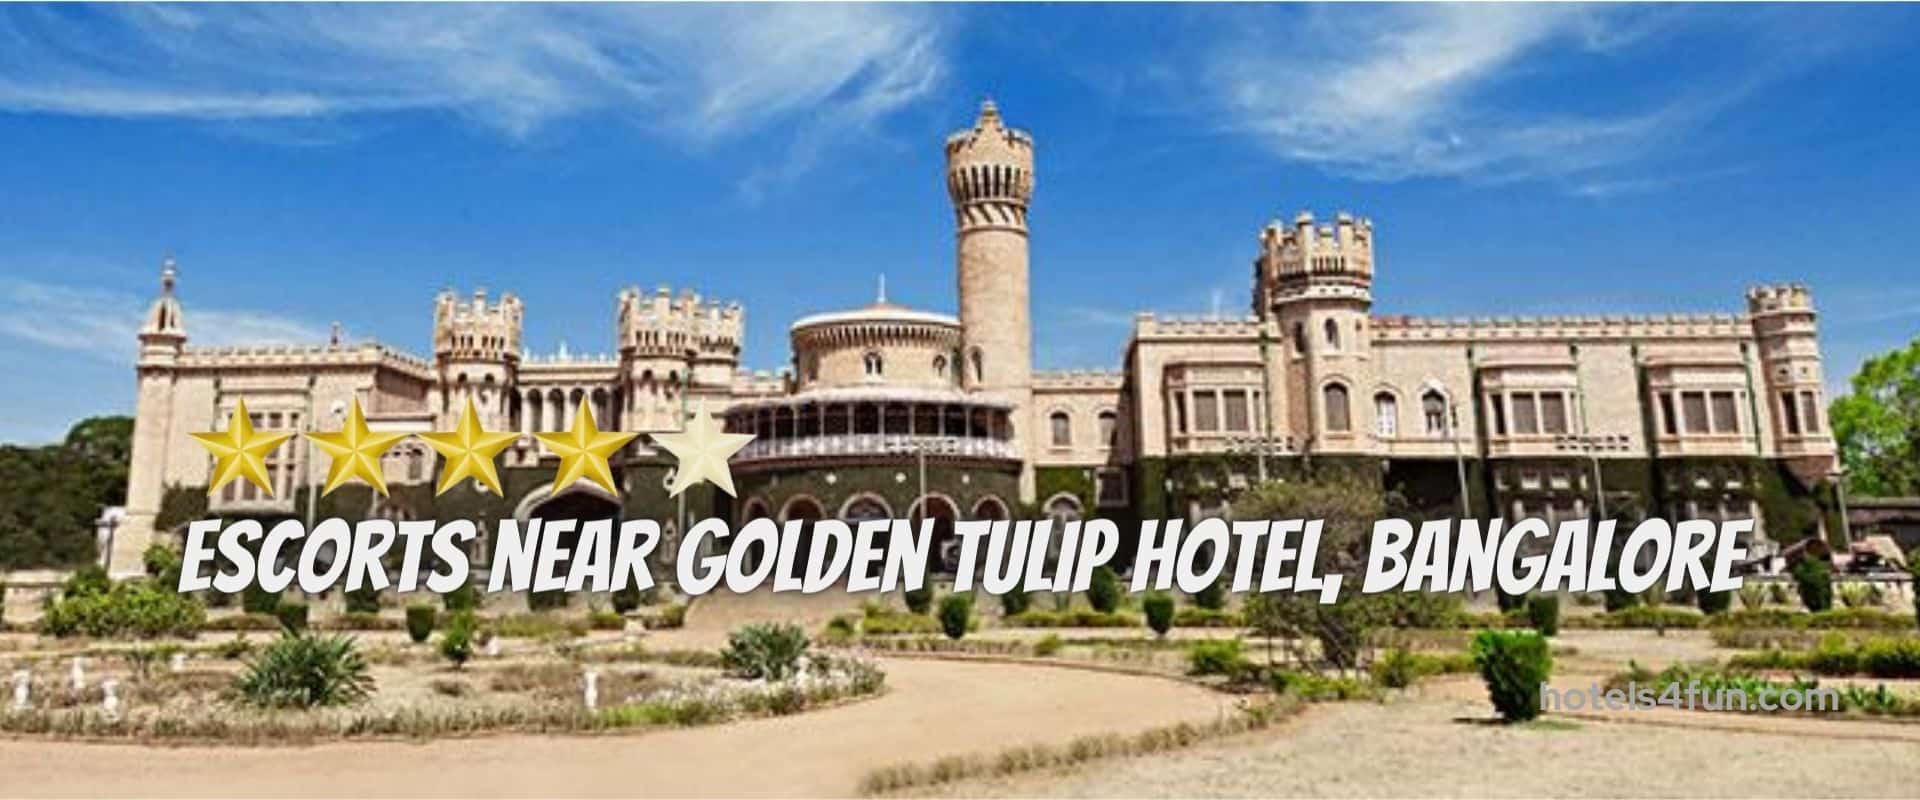 Golden Tulip Hotel Bangalore